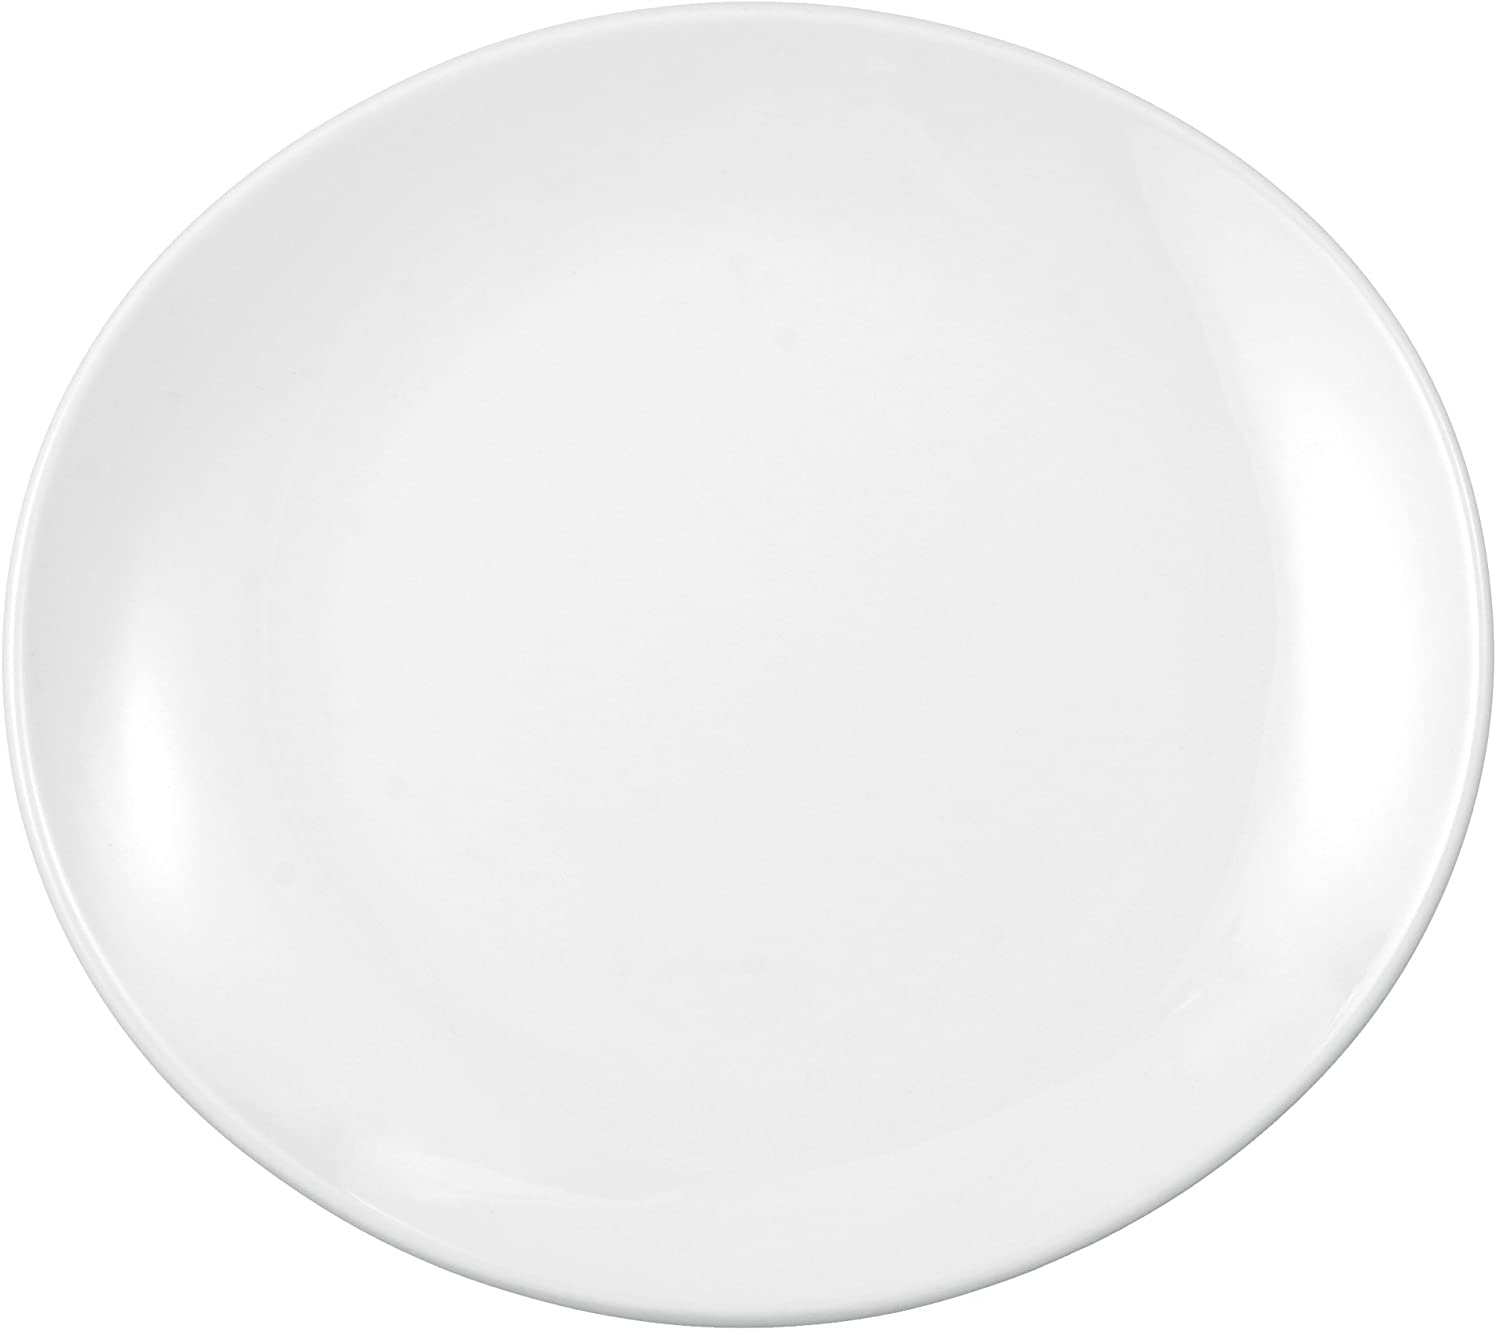 Plate 25.2 cm Modern Life White Plain Collar by Seltmann Weiden